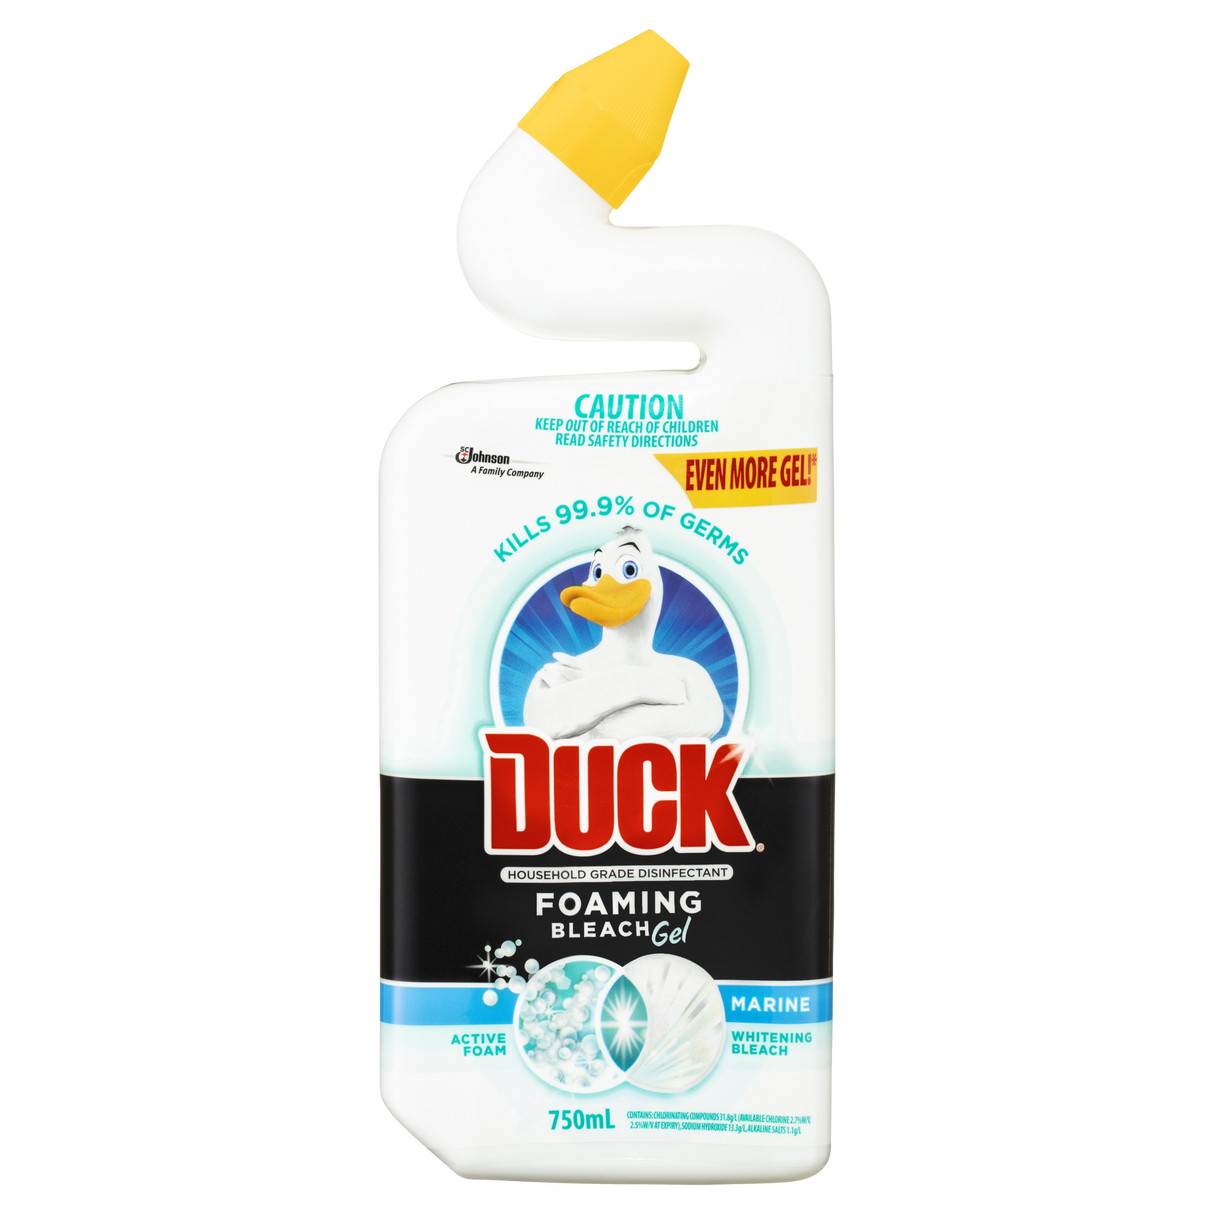 Duck Foaming Bleach Gel Toilet Cleaner Marine 750ml